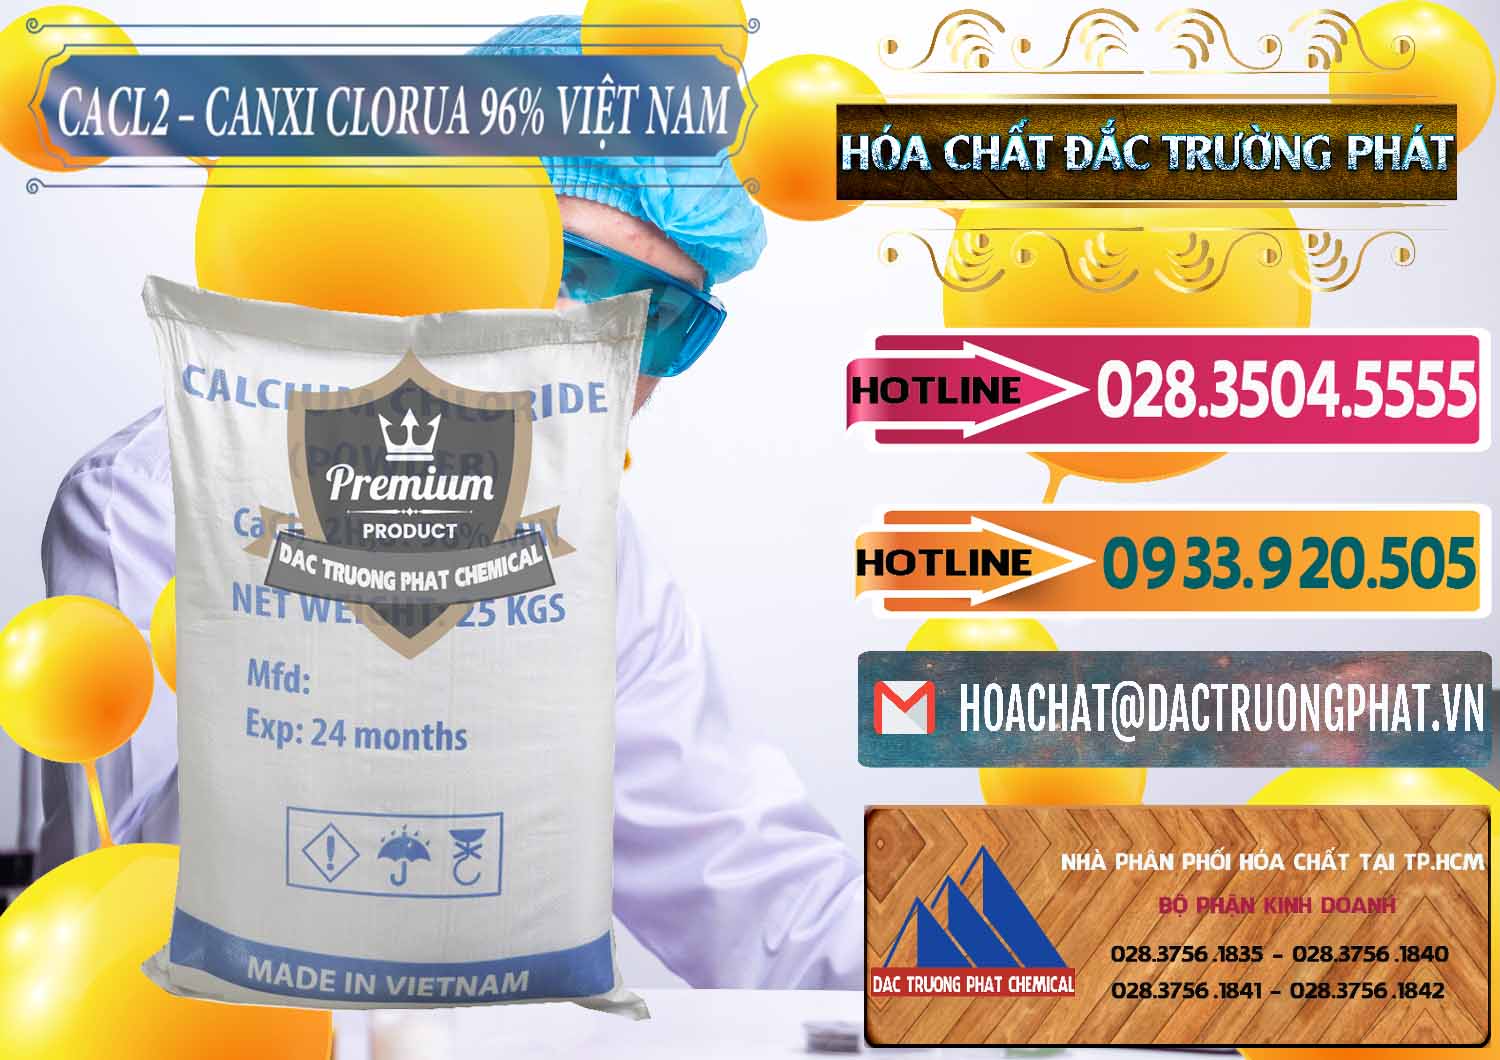 Nơi phân phối _ cung ứng CaCl2 – Canxi Clorua 96% Việt Nam - 0236 - Chuyên cung cấp _ kinh doanh hóa chất tại TP.HCM - dactruongphat.vn